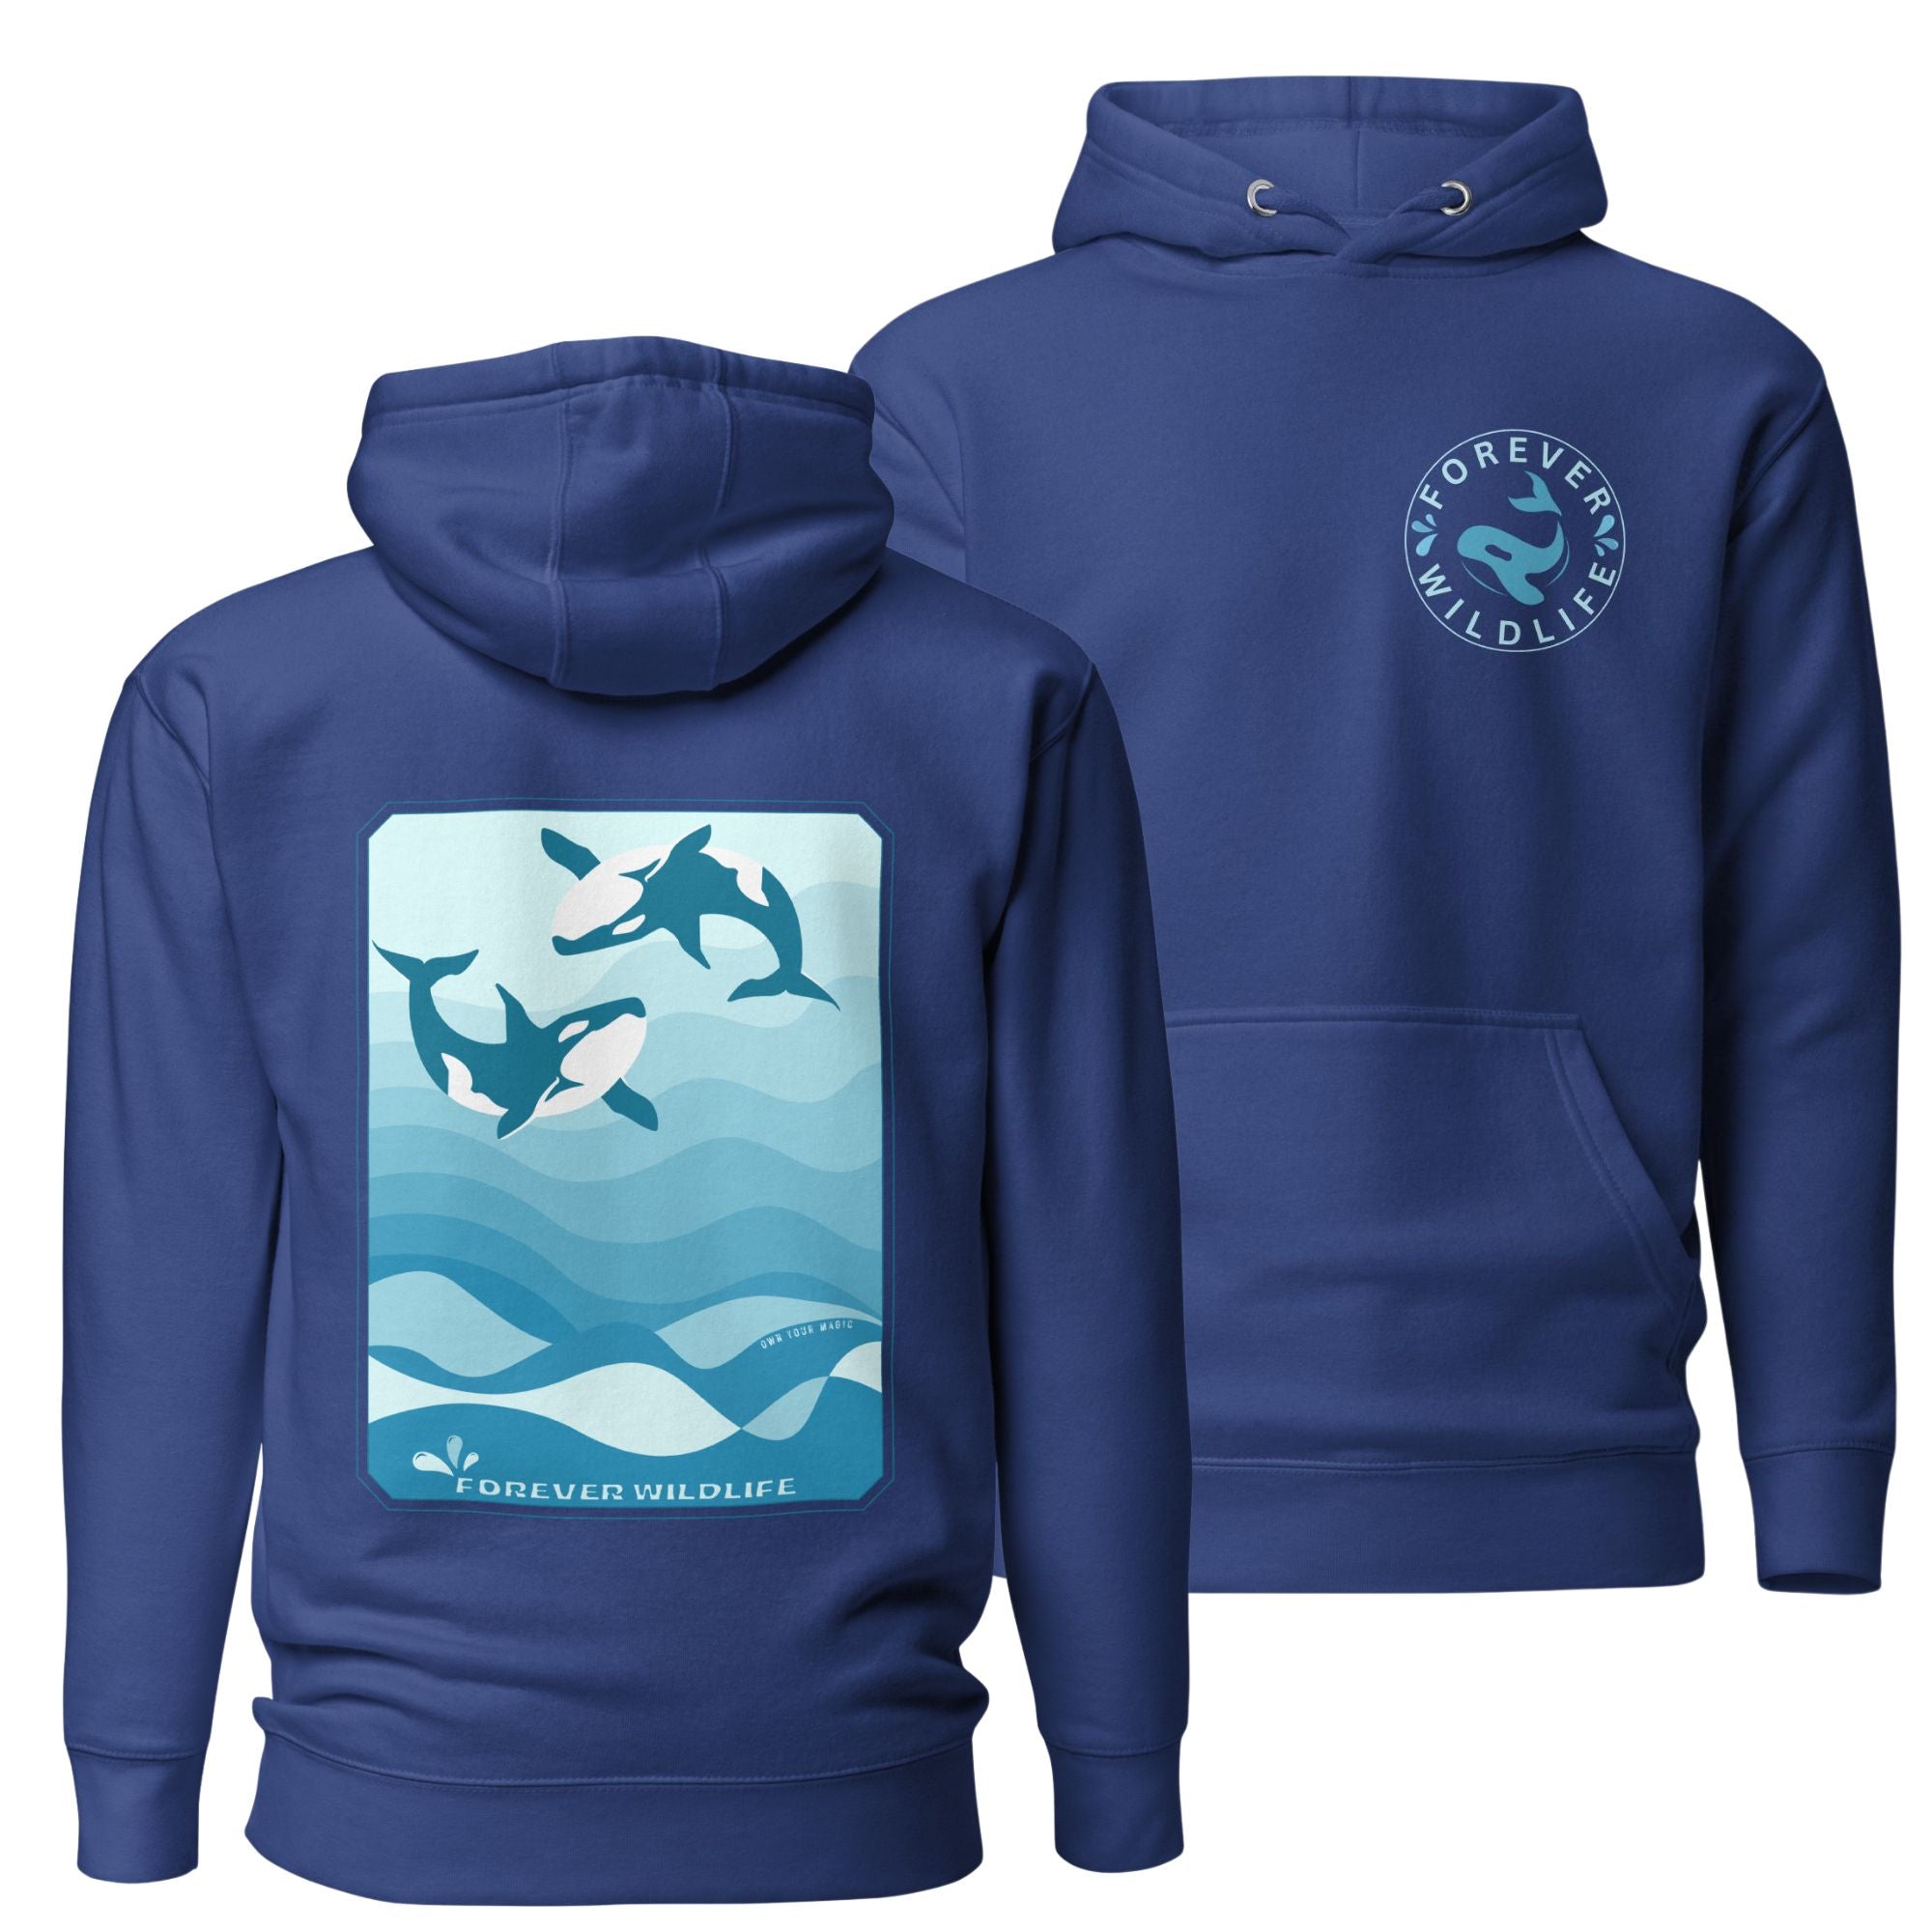 Orca Hoodie, beautiful Royal Blue Orca hoodie with Killer Whales on the hoodie by Forever Wildlife selling Wildlife hoodies.